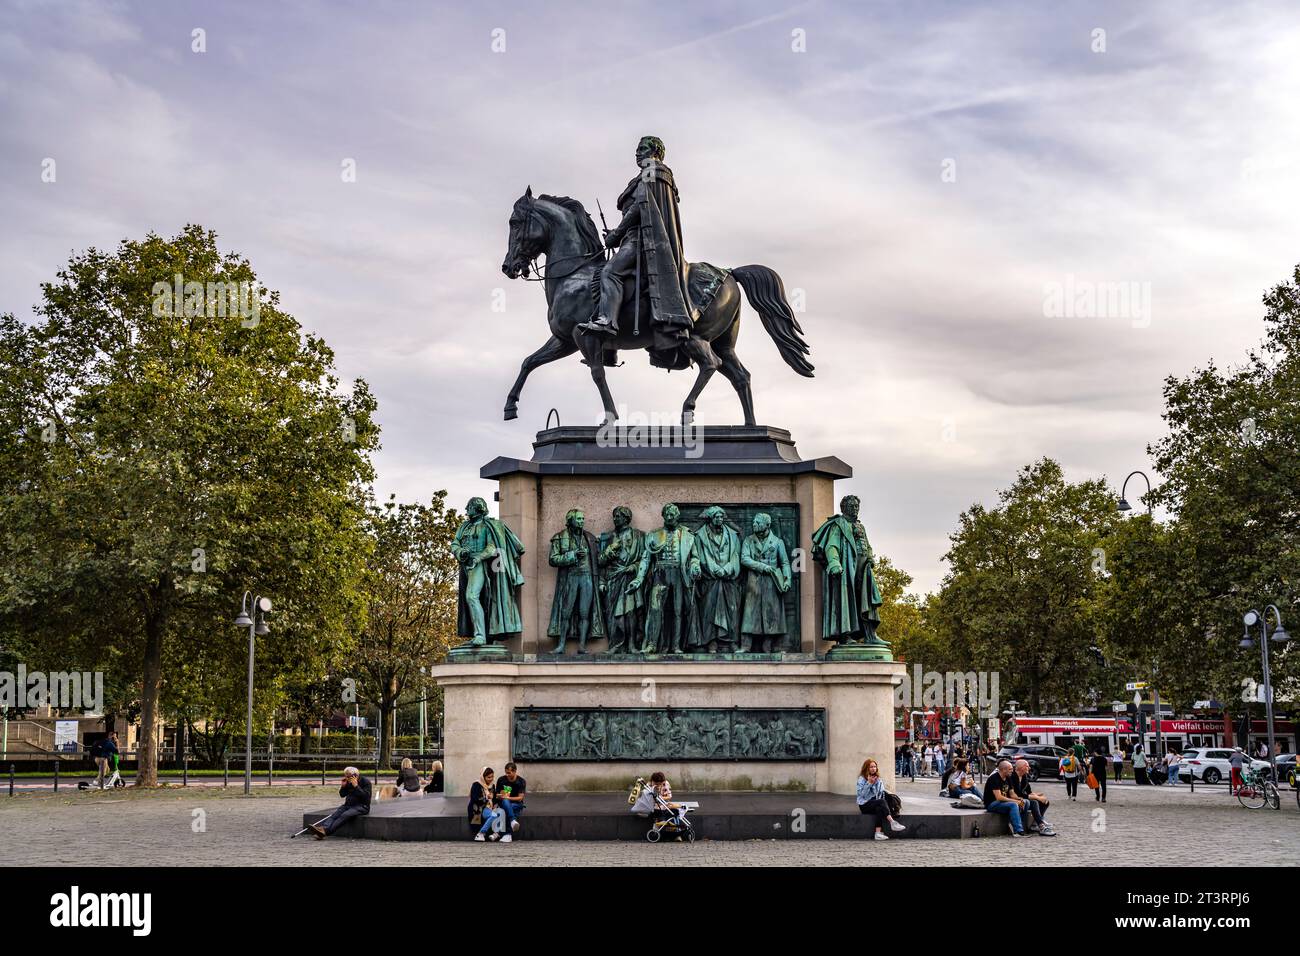 Reiterstandbild König Friedrich Wilhelm III Auf dem Heumarkt in Köln, Nordrhein-Westfalen, Deutschland | Eqestrische Statue von König Friedrich Willia Stockfoto